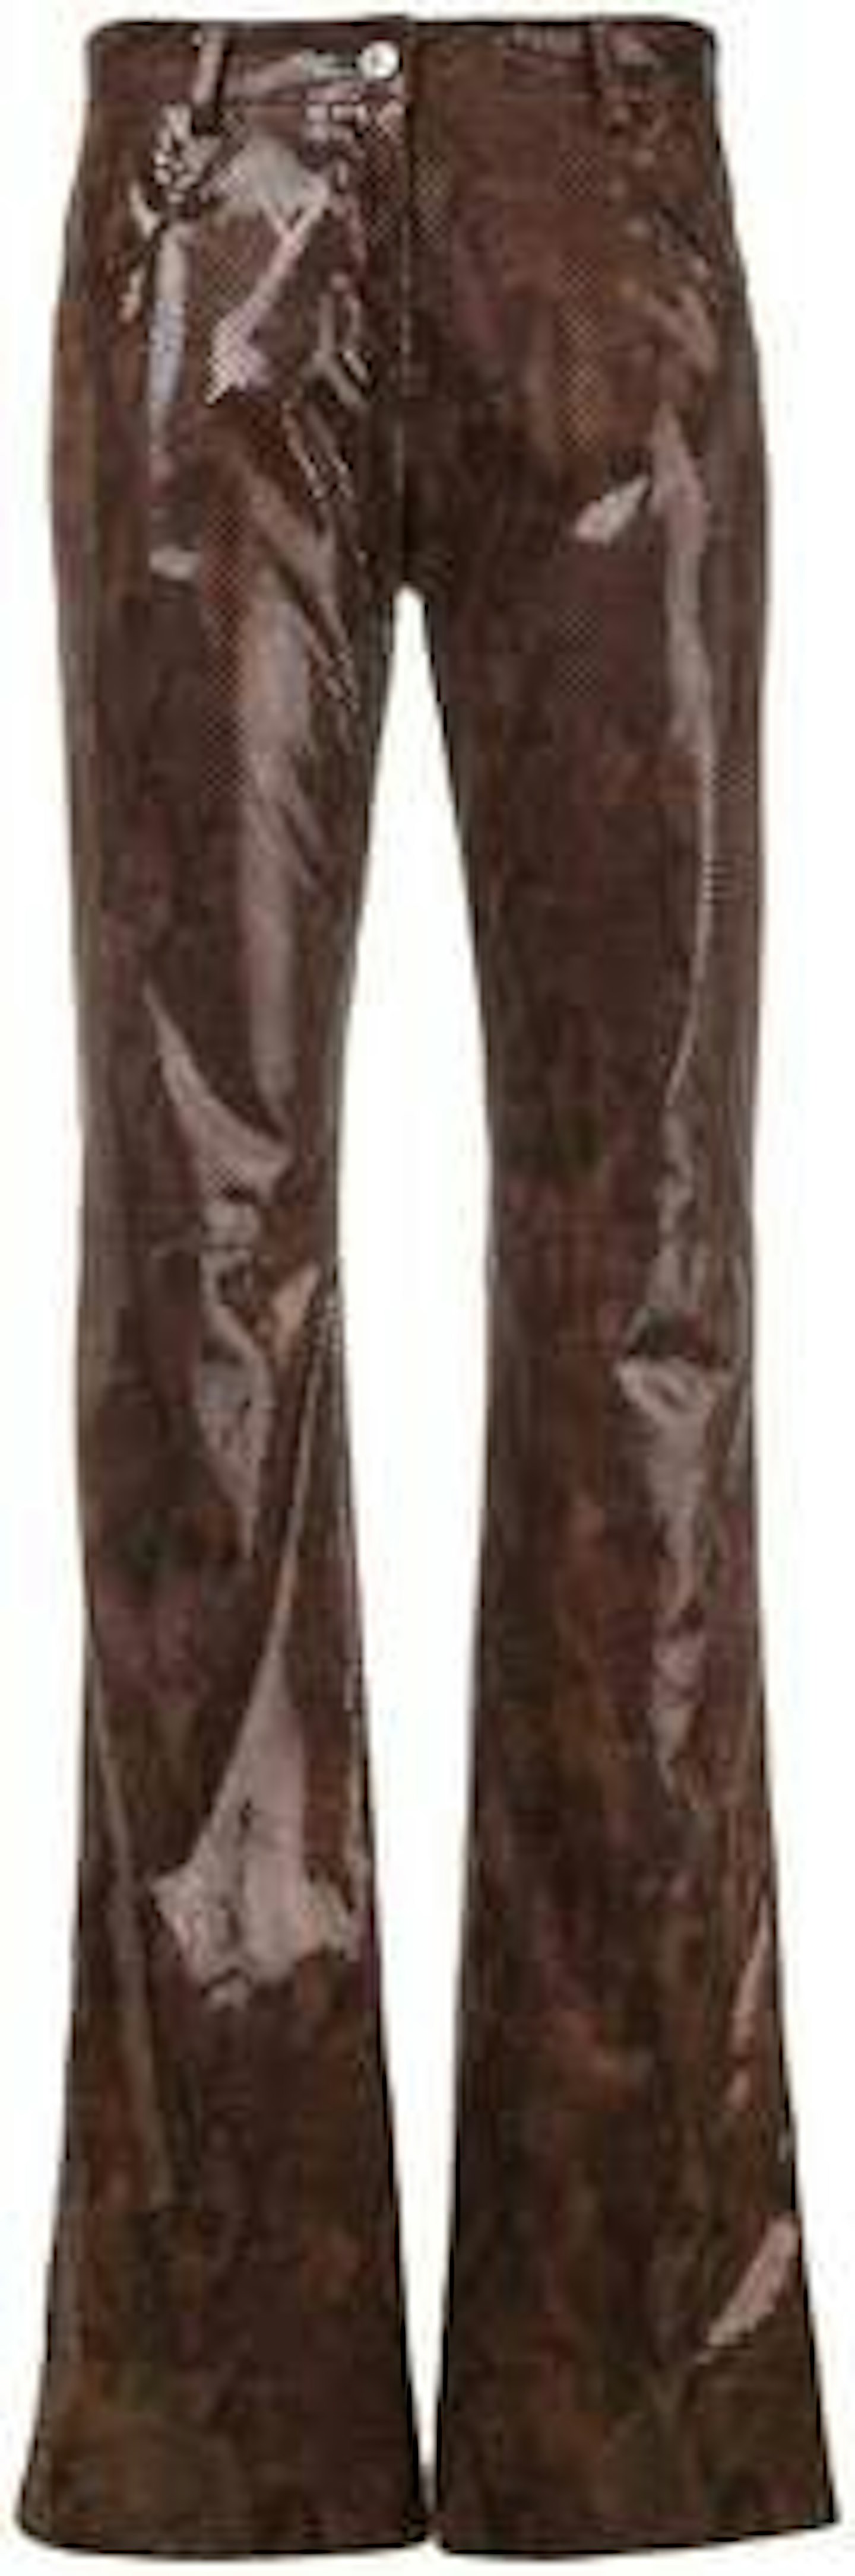 MGSN, Snakeskin Effect Trousers, £315, Farfetch